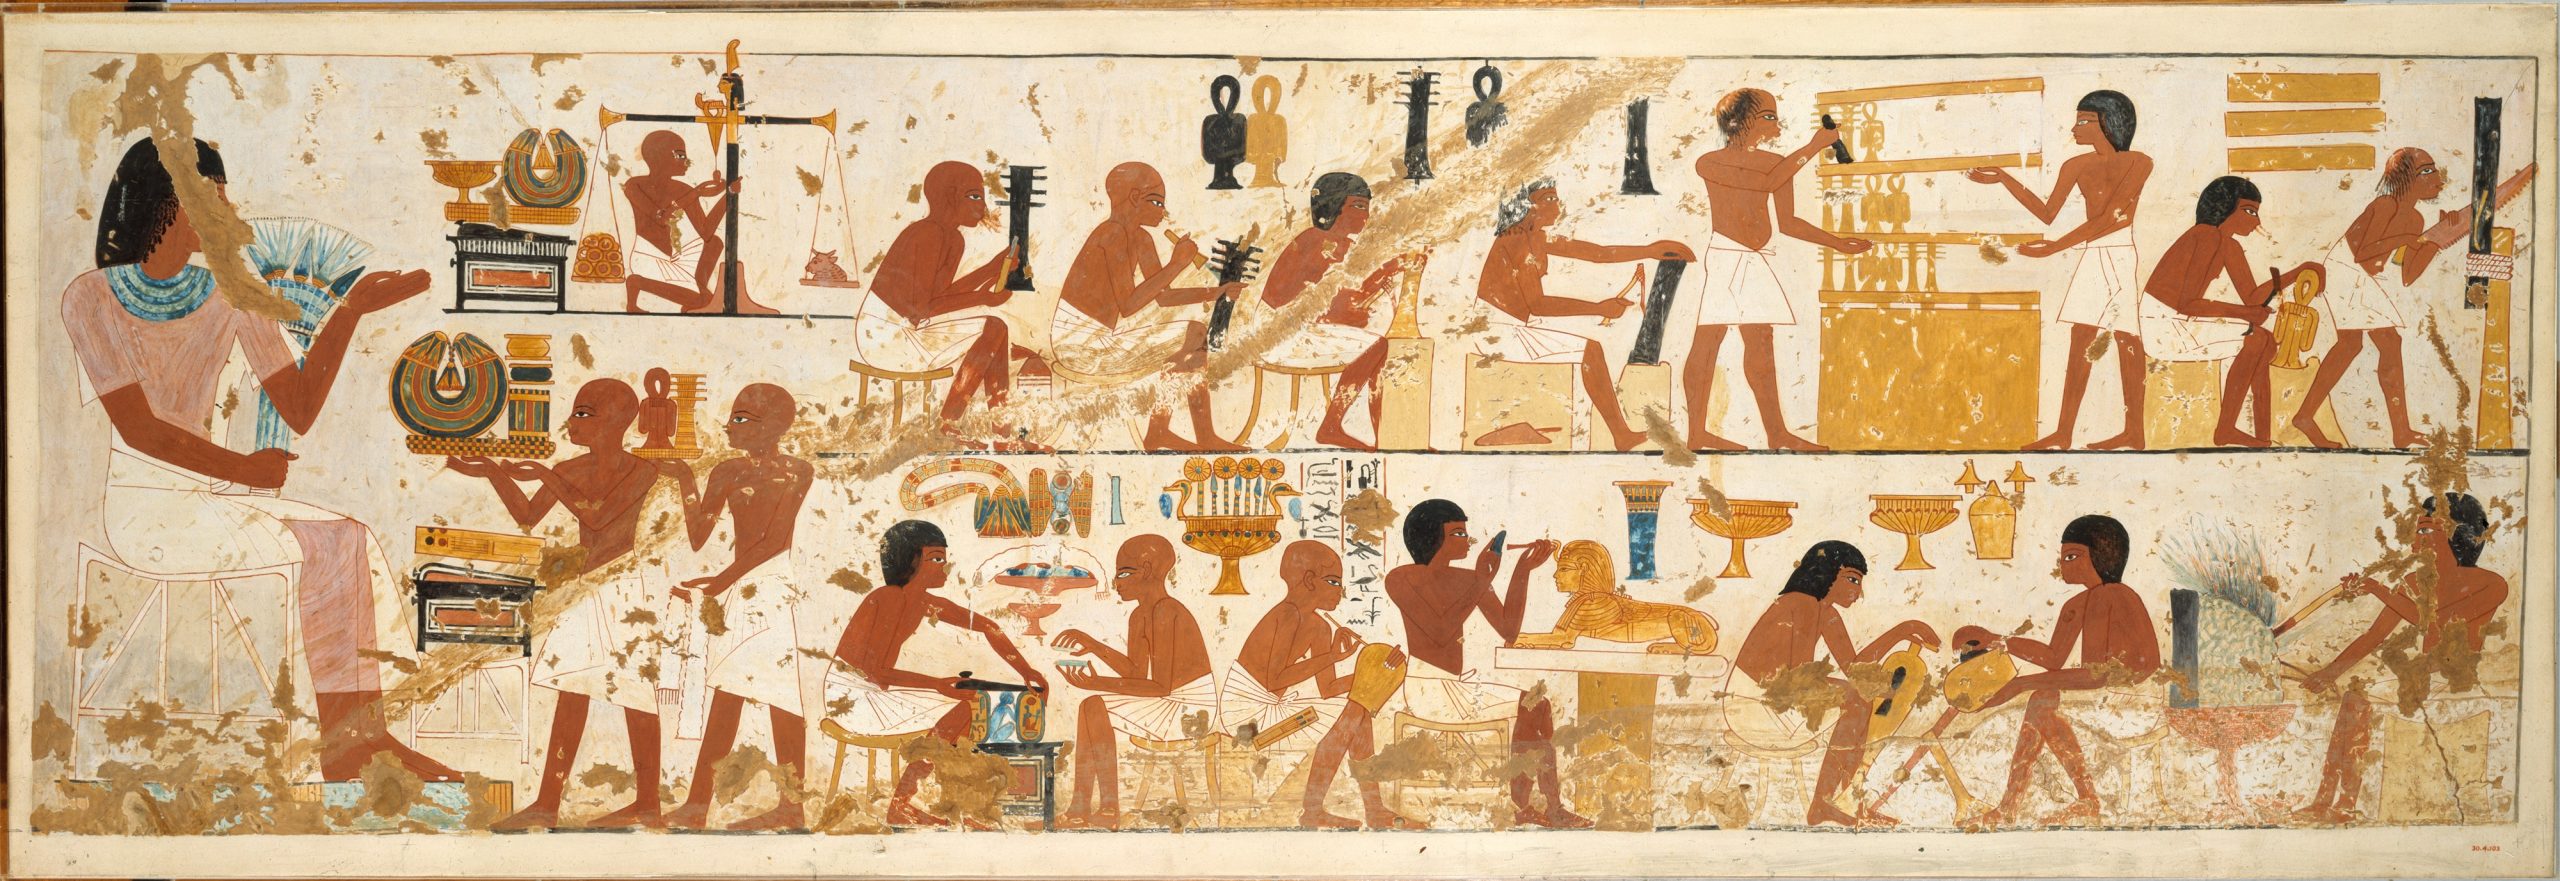  Facsímil d’una de les pintures murals de la tomba de Nebamun i Ipuky (TT181) amb la representació de joiers, fusters i treballadors del metall. Font: Viquipèdia.